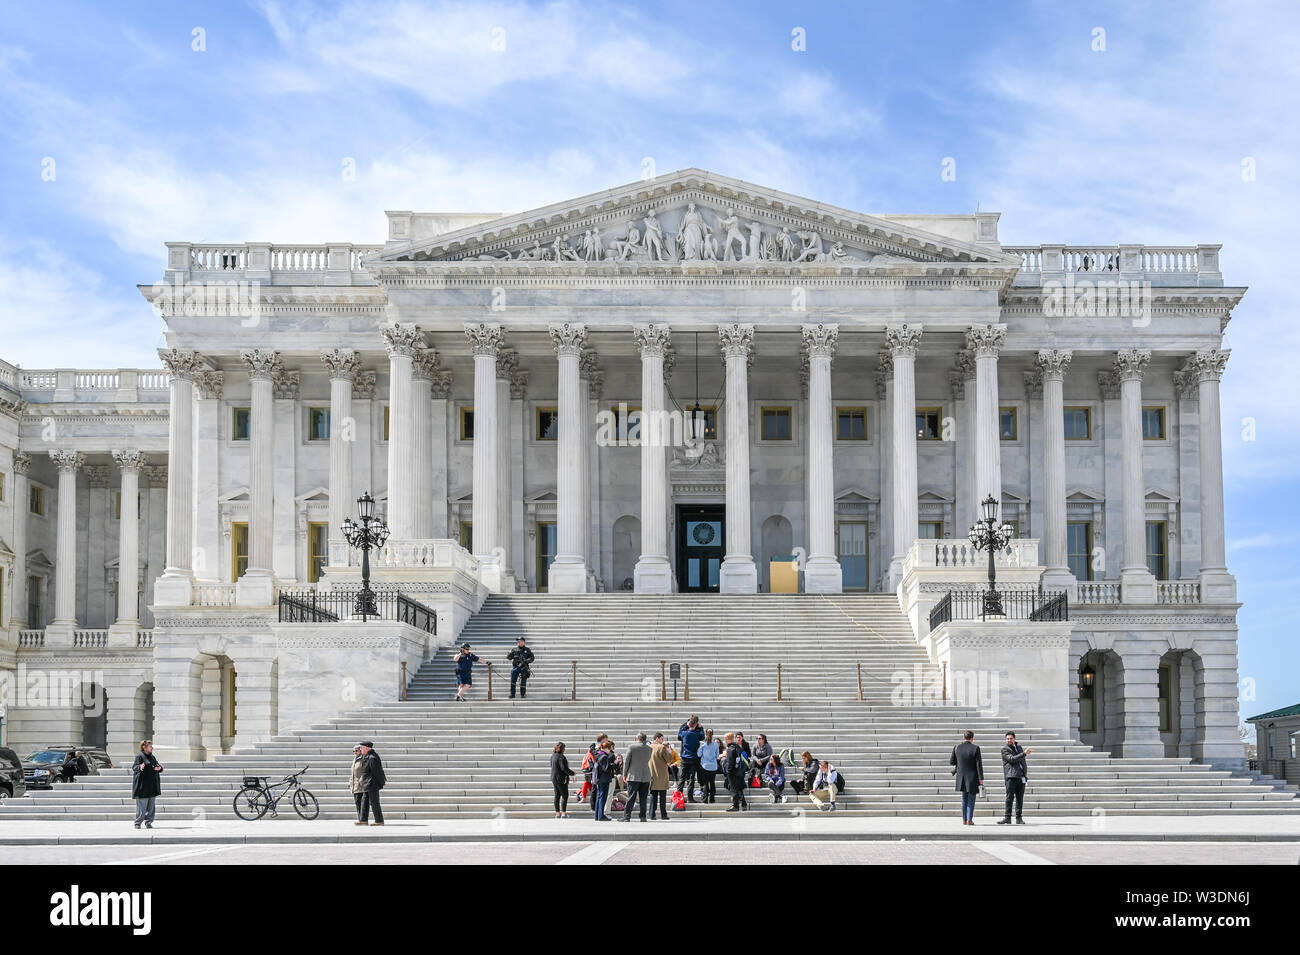 L'aile nord du Capitole abritant le Sénat des États-Unis. Banque D'Images